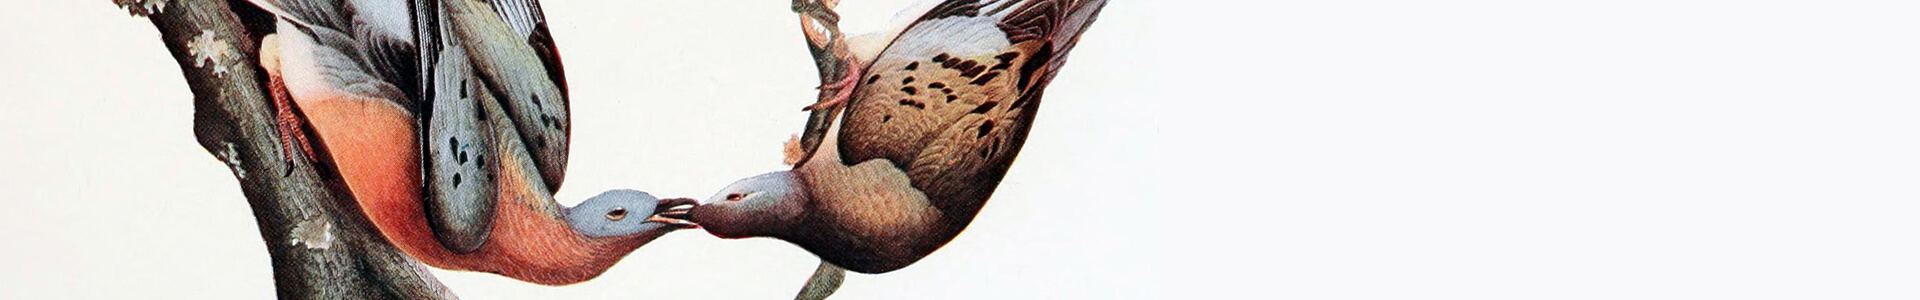 Passenger Pigeons, John James Audubon